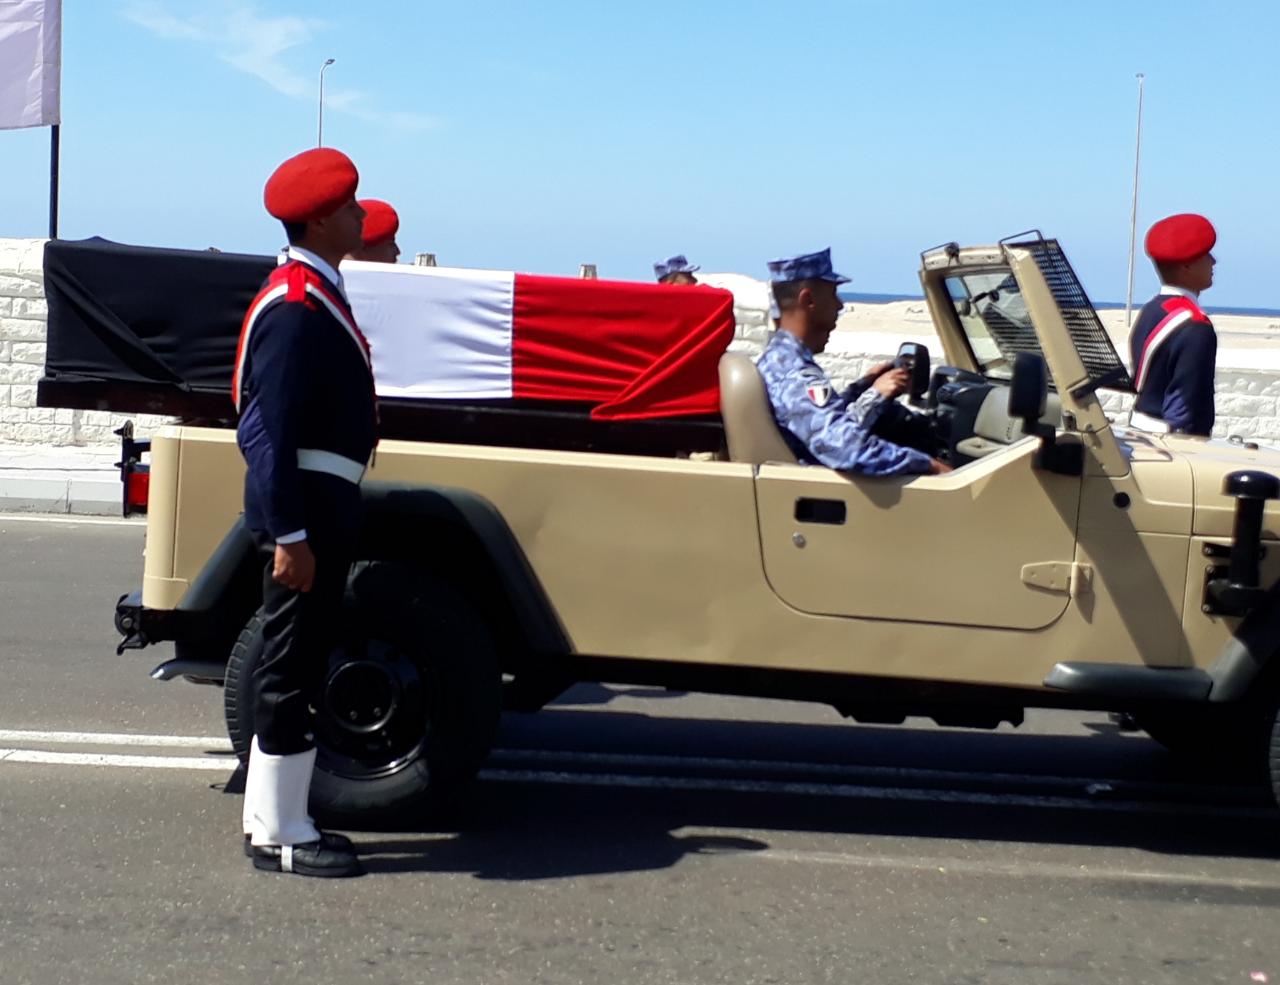  تشييع جثمان شهيد الواجب بسيناء في جنازة عسكرية مهيبة بالإسكندرية (2)